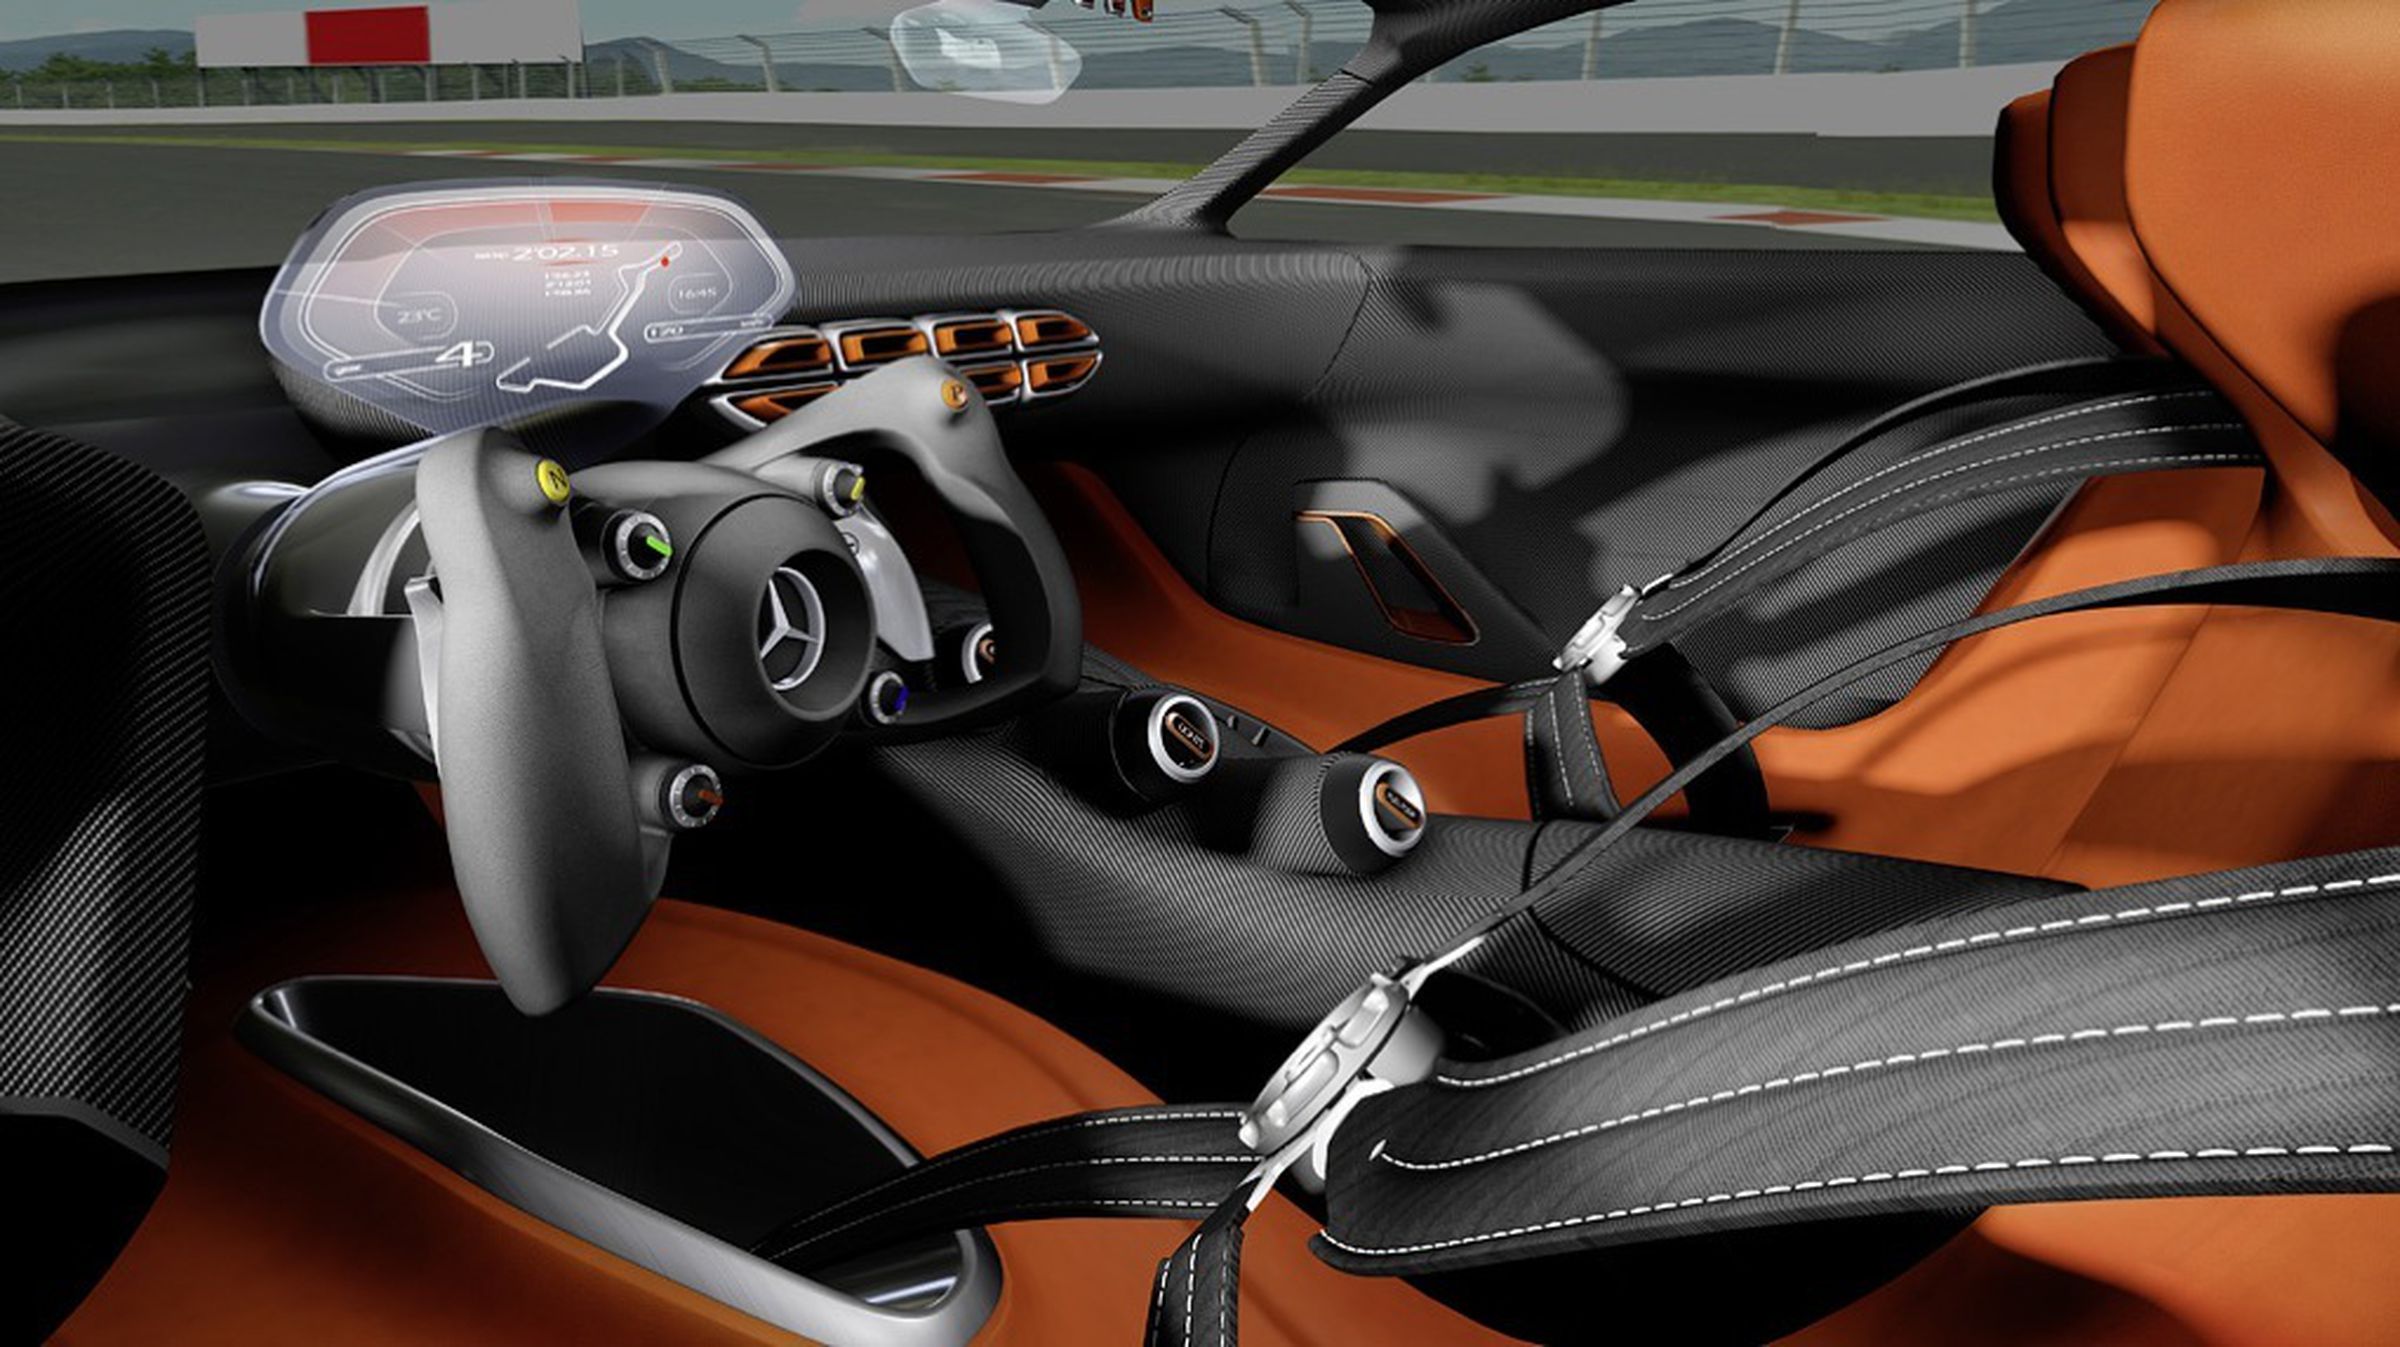 Mercedes-Benz AMG Vision Gran Turismo concept supercar